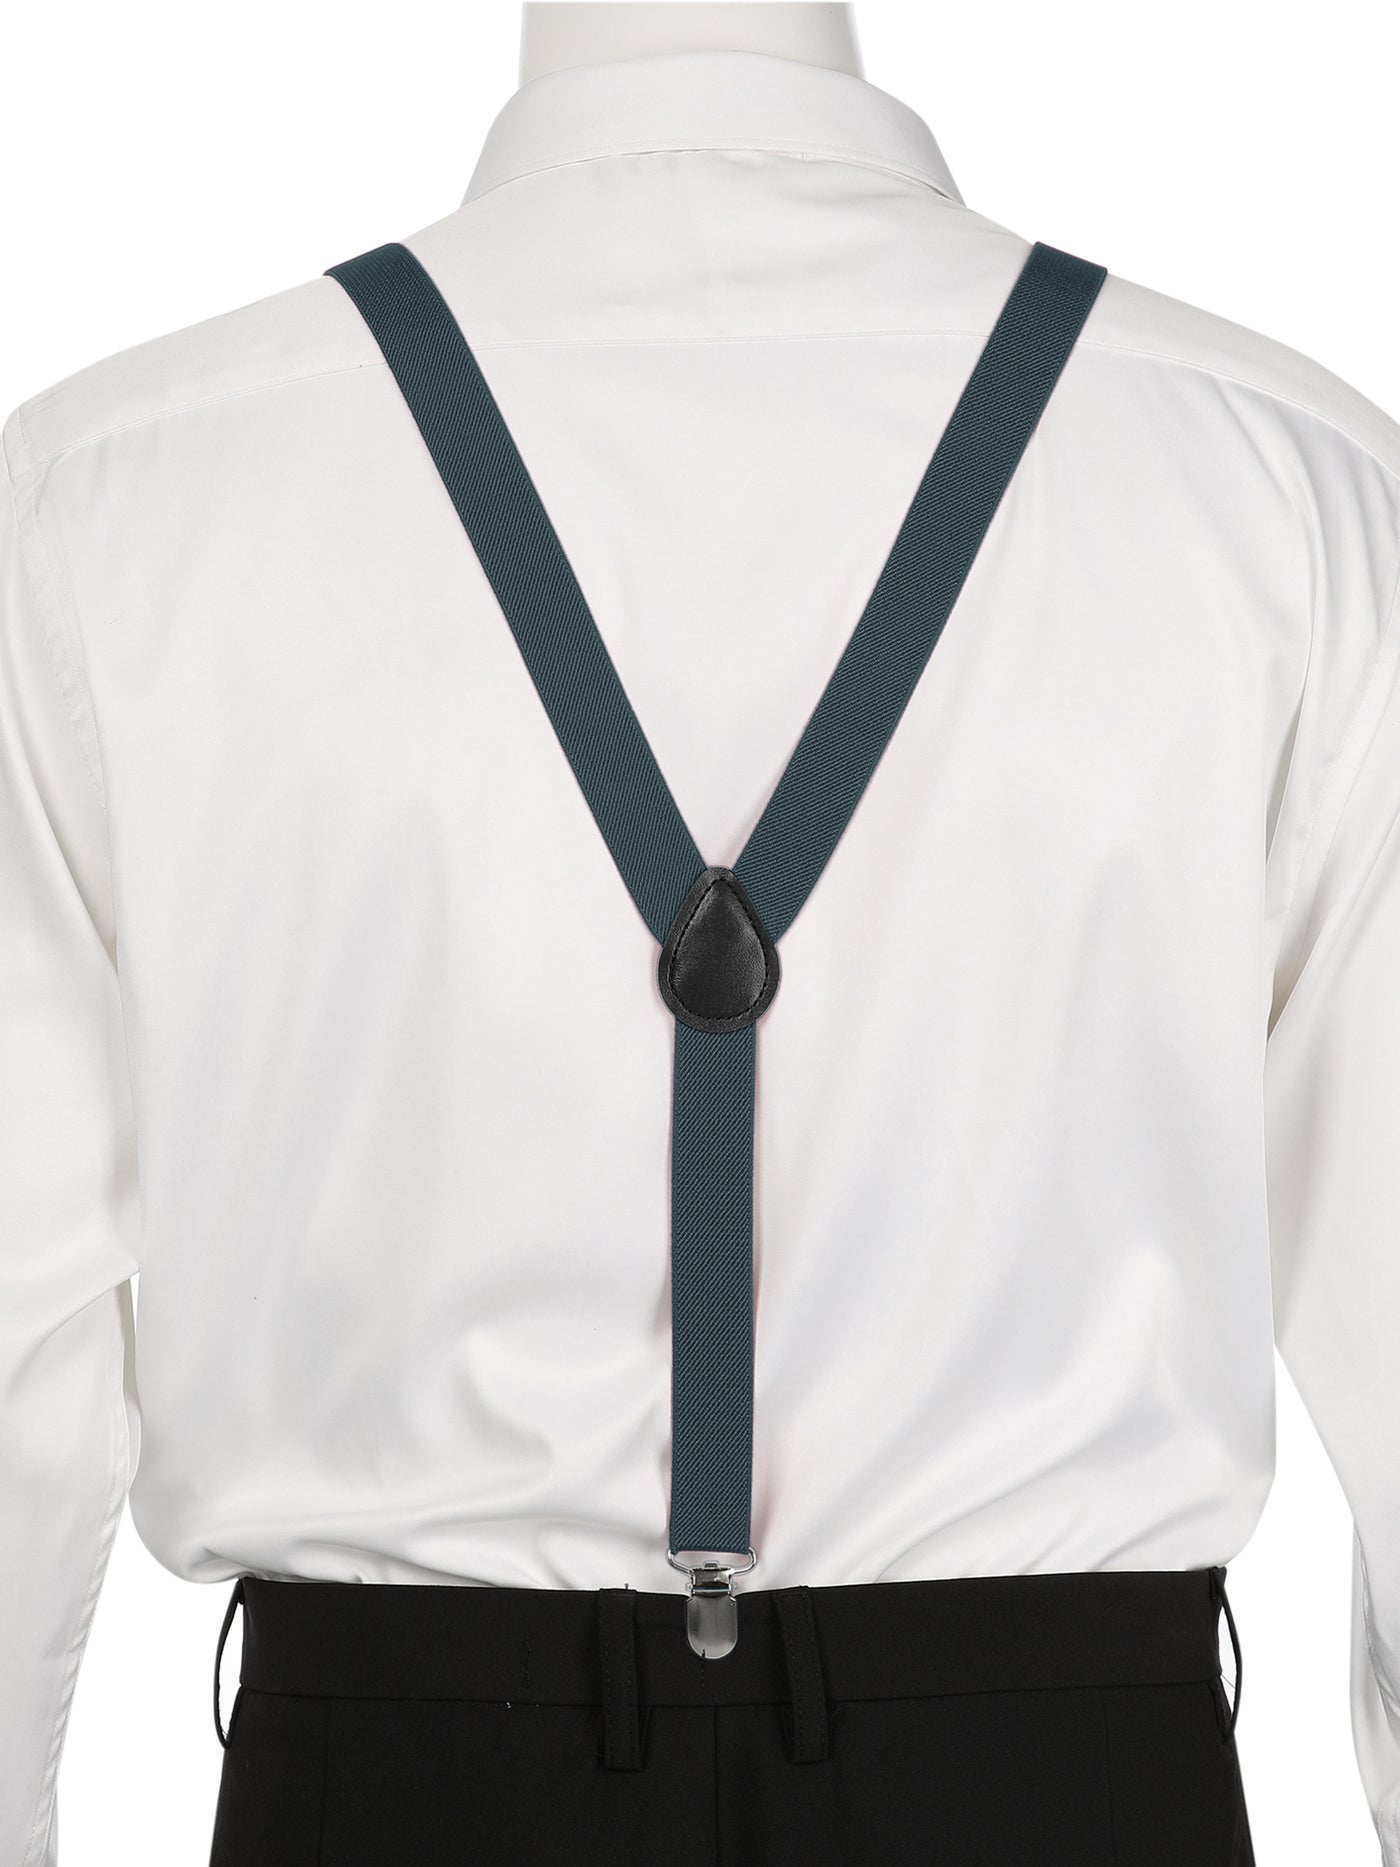 Allegra K Lady  Adjustable Metal Clamp Elastic Suspenders Braces